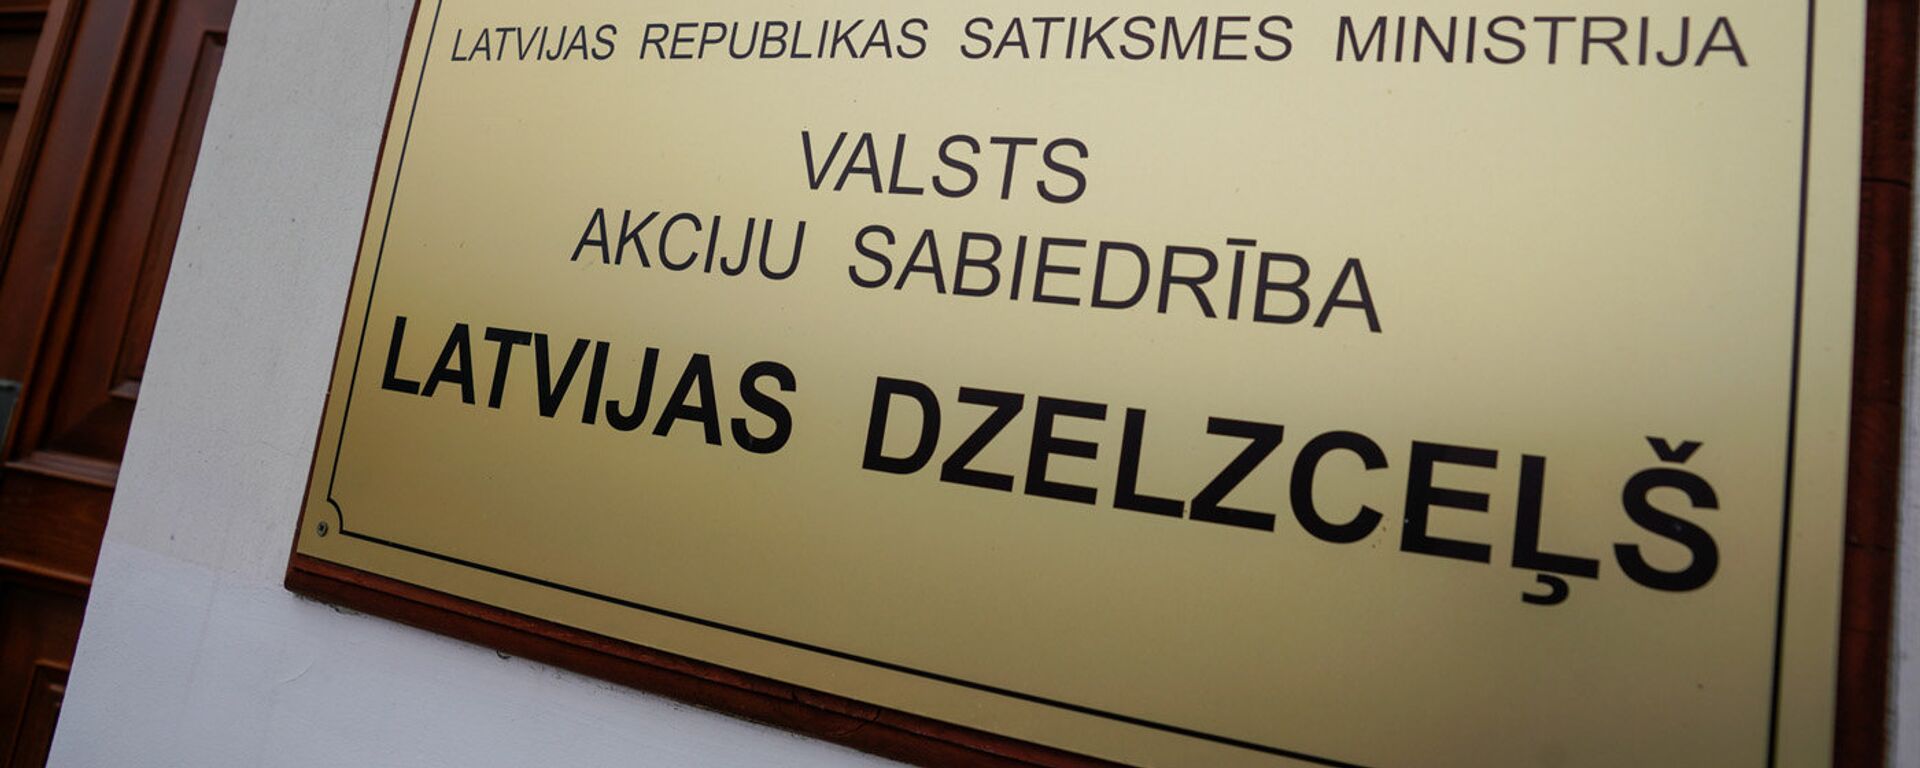 Государственное акционерное общество Latvijas dzelzceļš - Sputnik Latvija, 1920, 23.02.2021